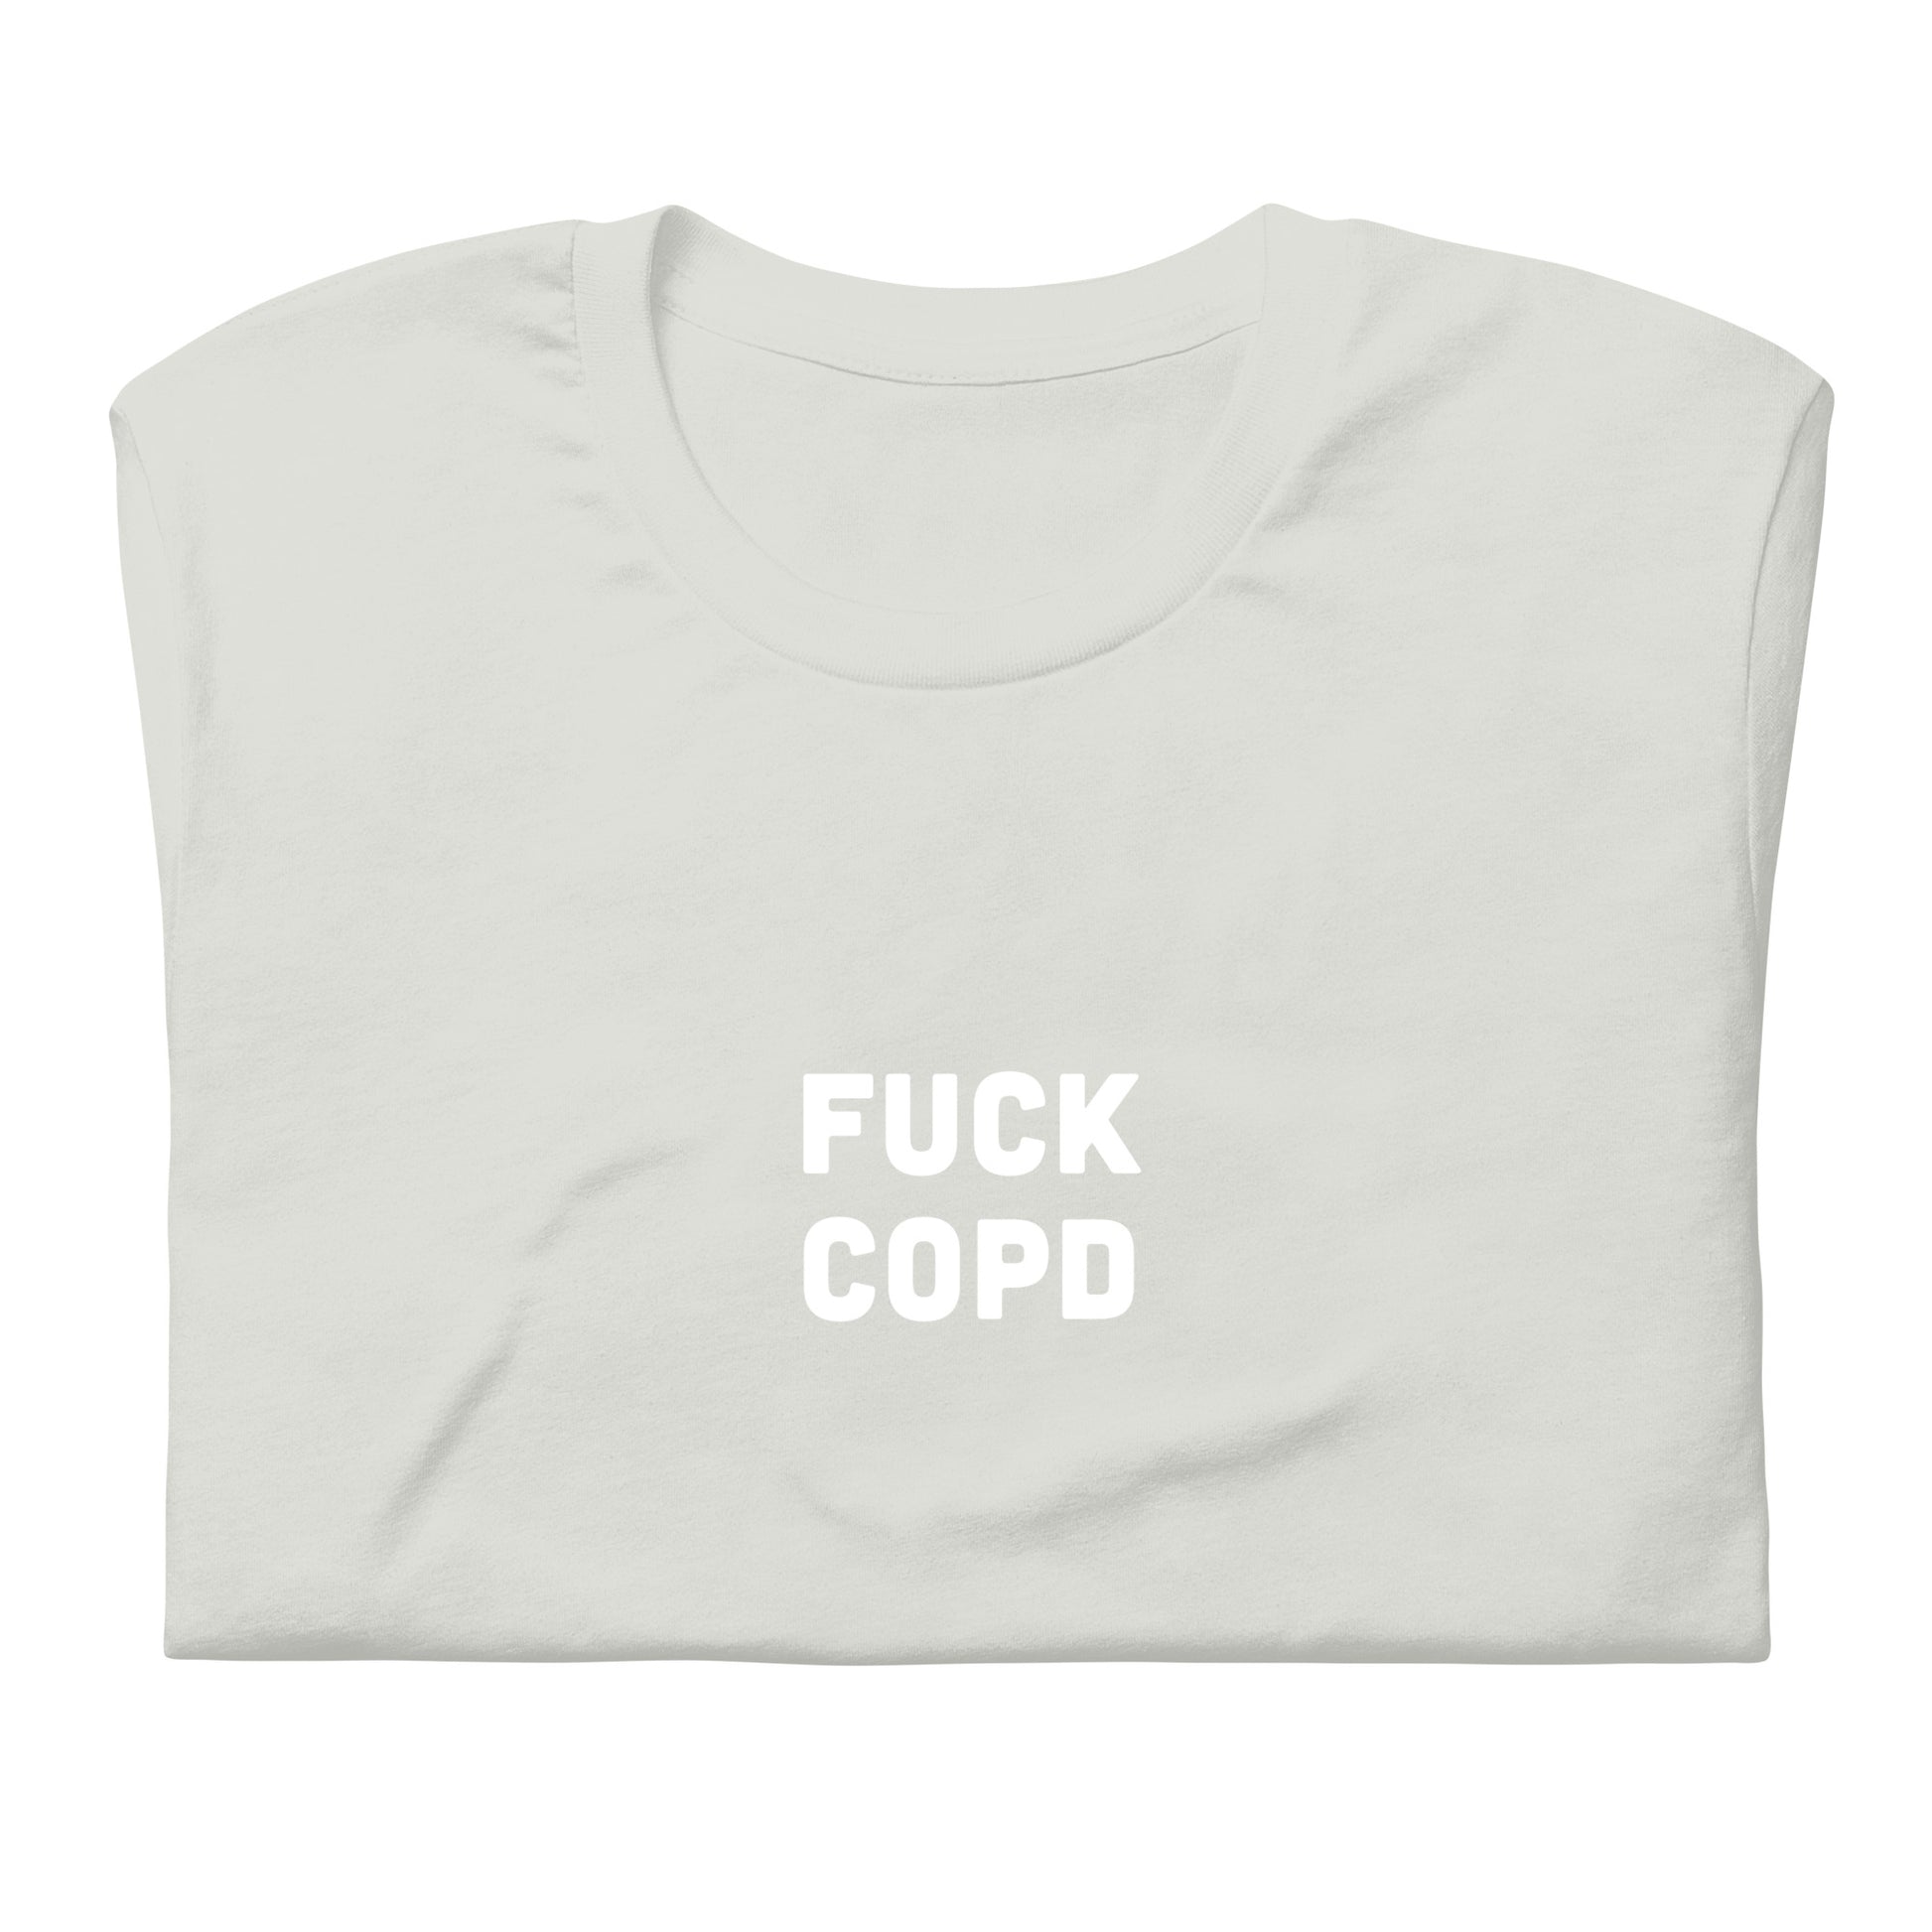 Fuck Copd T-Shirt Size 2XL Color Asphalt